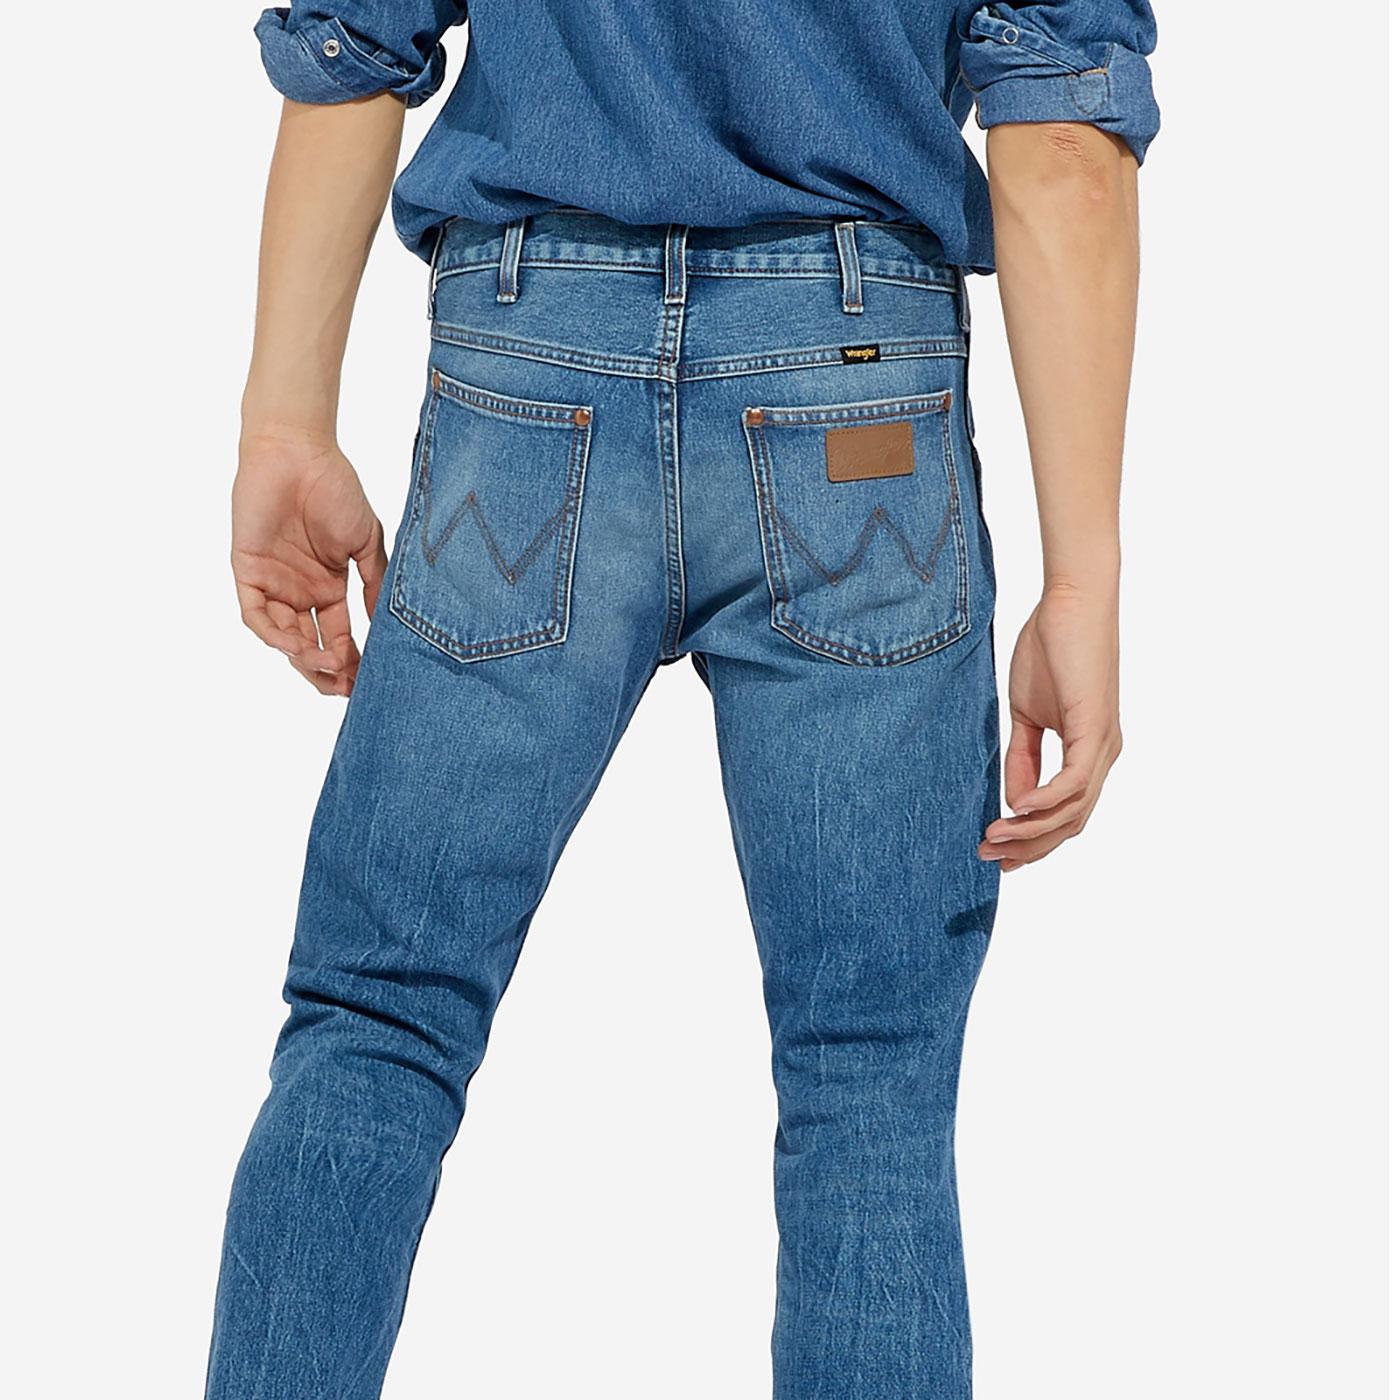 11mwz wrangler jeans